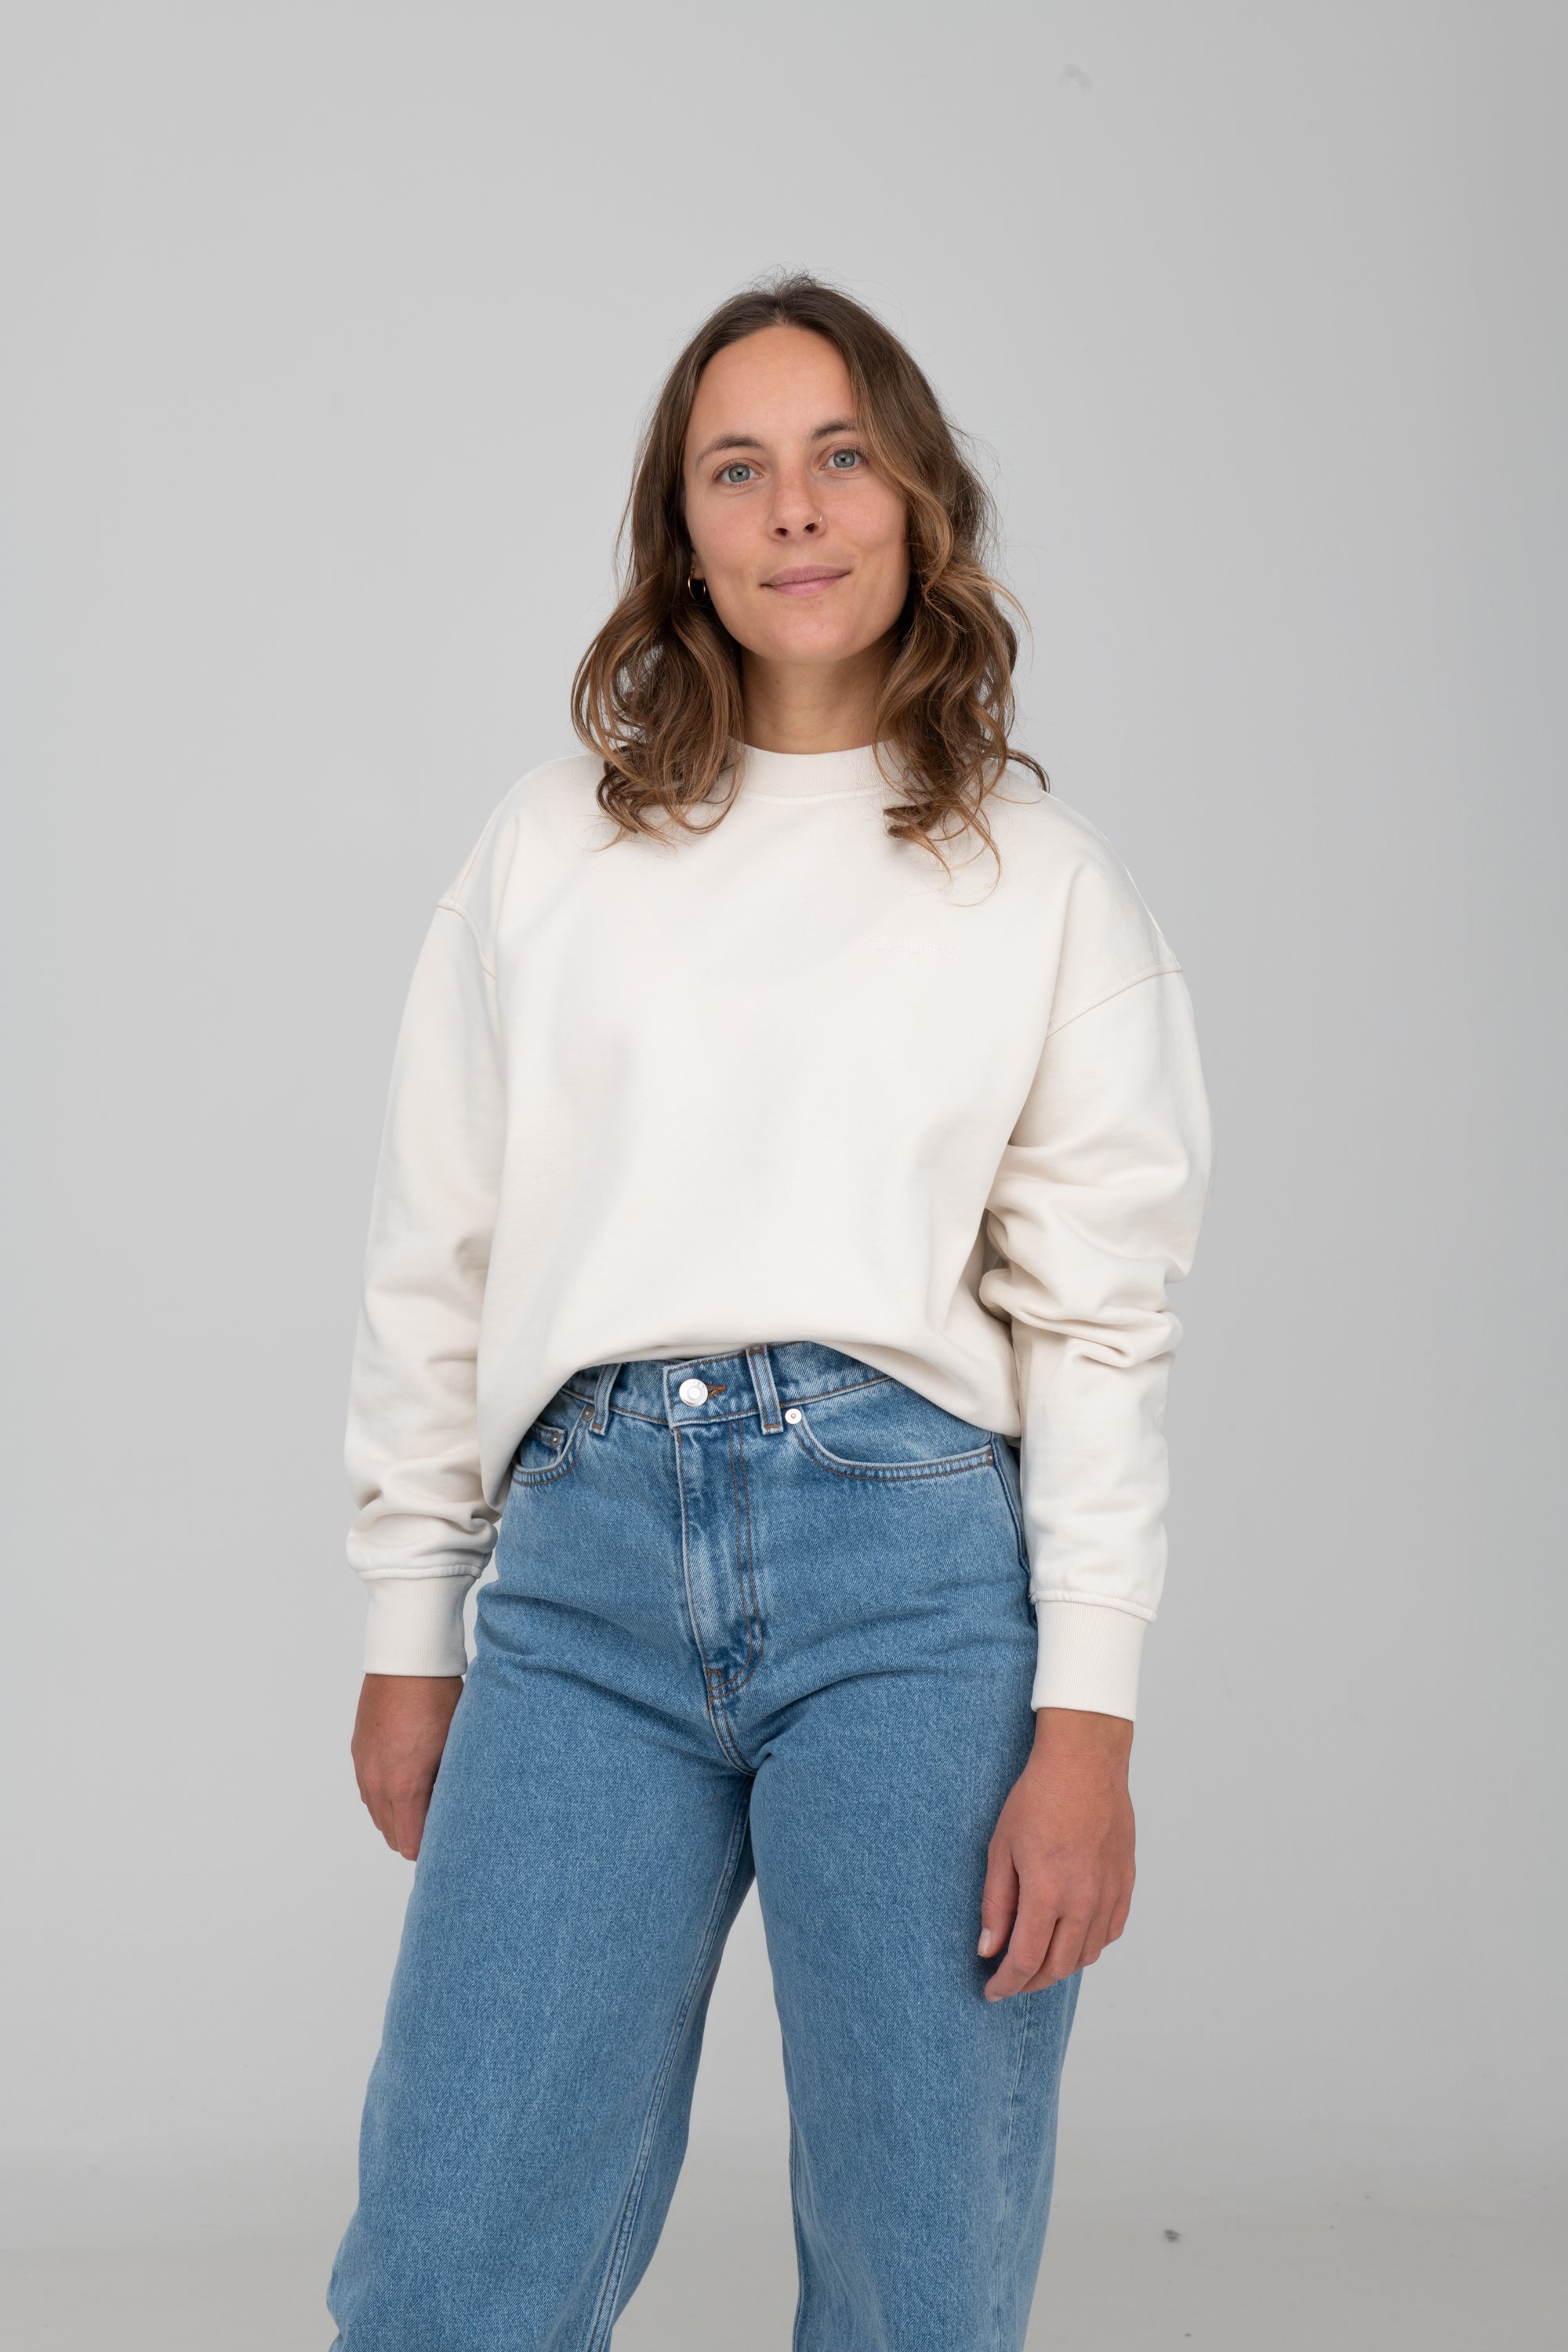 Sweater von SALZWASSER in Off-White an Frau